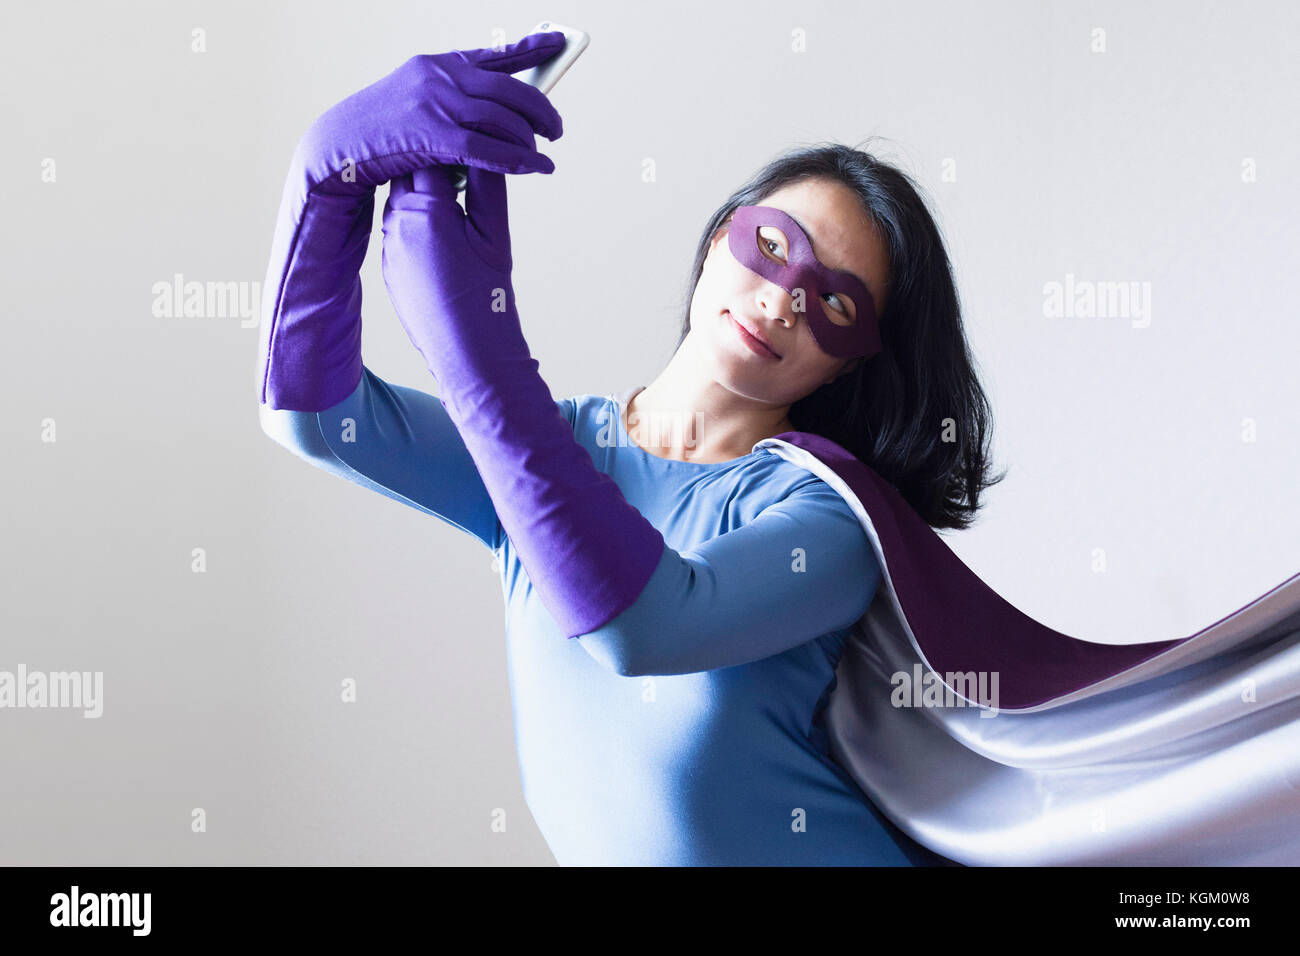 Junge Frau gekleidet als Superheld unter selfie vor weißem Hintergrund Stockfoto